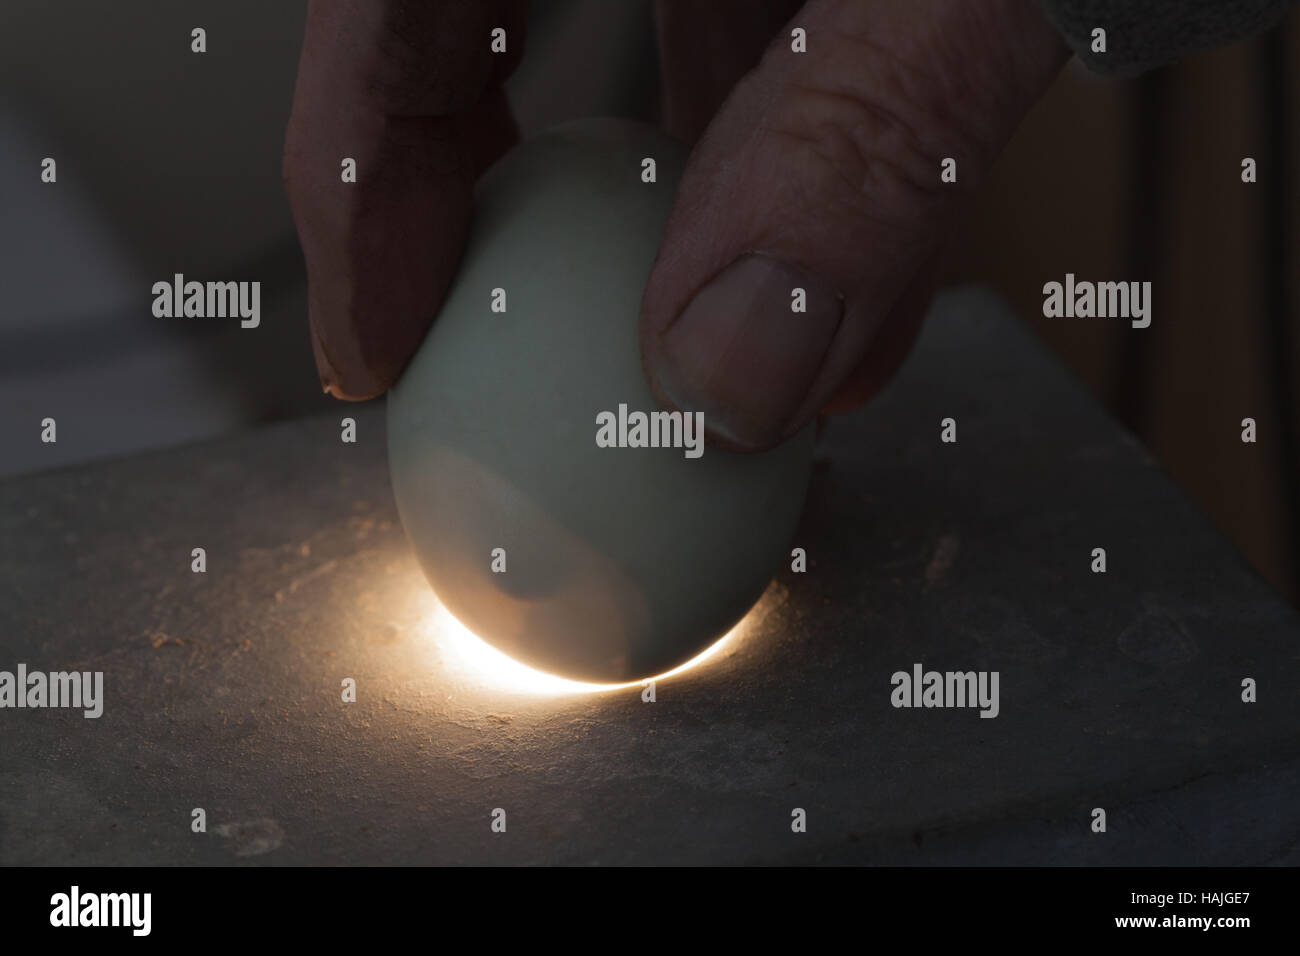 Vogel-Ei, ein candled über eine Lichtquelle. Rechnung oder Schnabel Tipp des Kükens erkennen innerhalb der Luftraum am breiten Ende des Eies Stockfoto